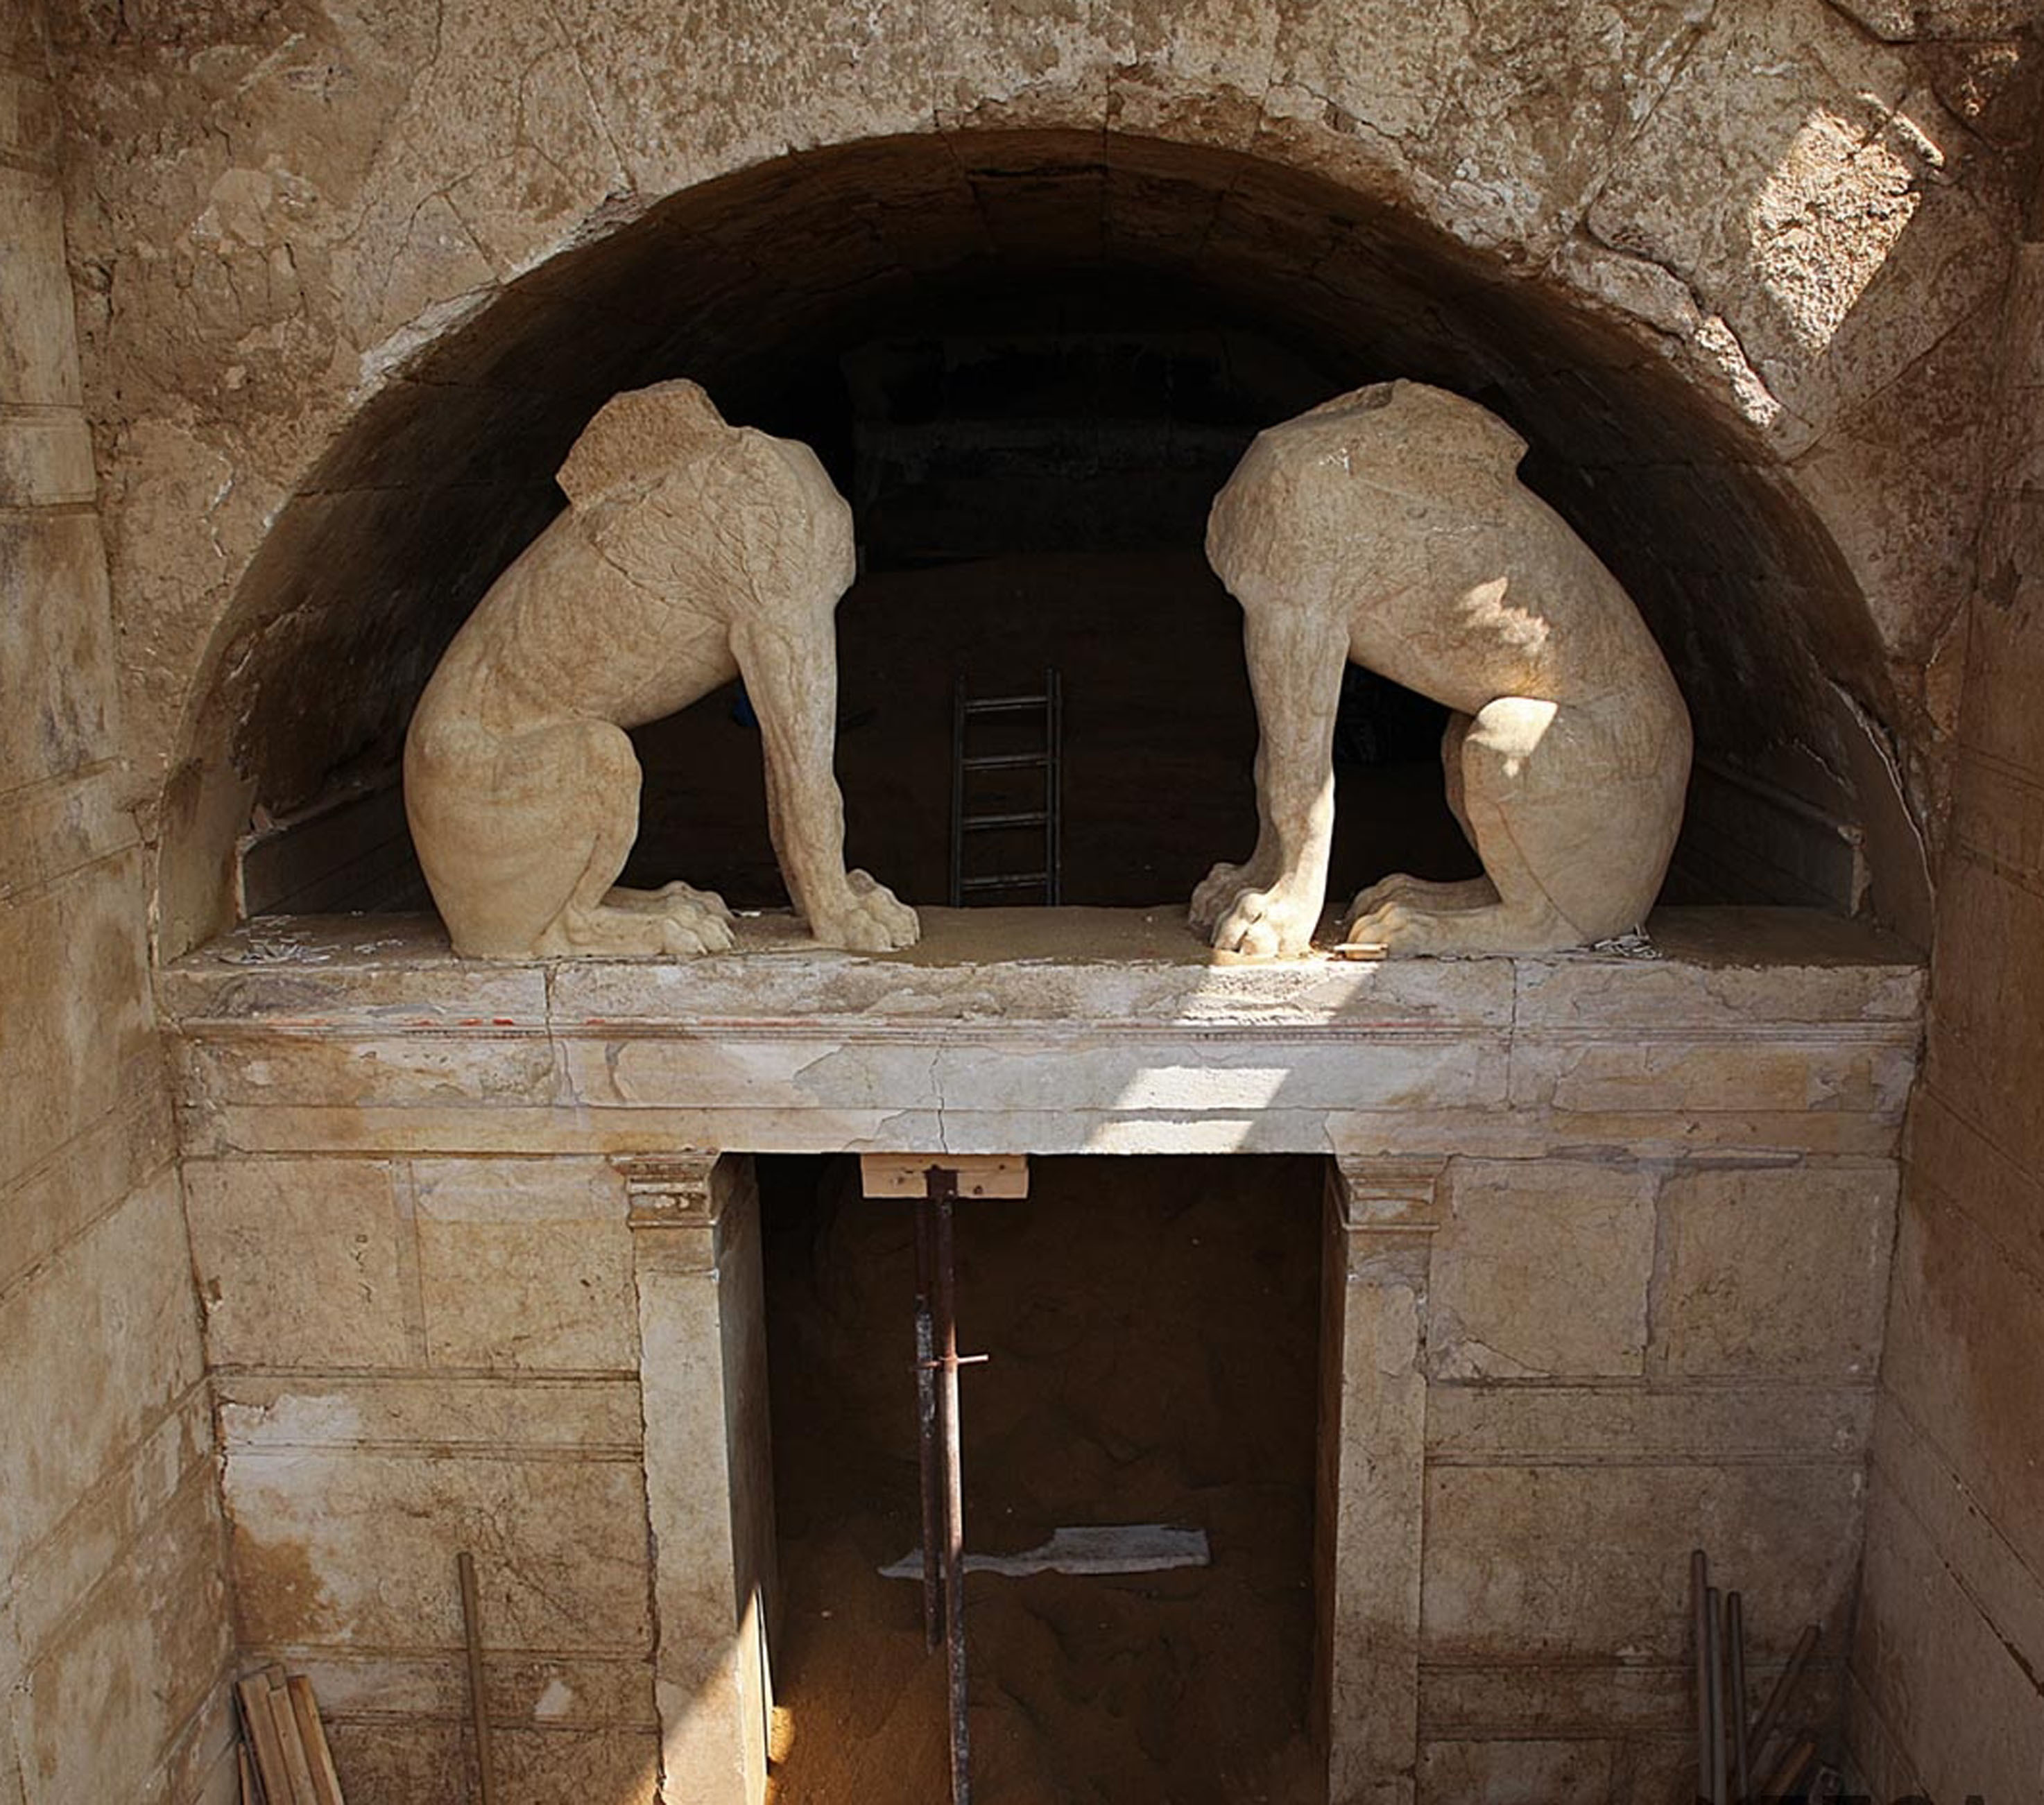 Ανήκει στον Μέγα Αλέξανδρο ο τάφος της Αμφίπολης; – Γιατί το πιστεύει αυτό εδώ και χρόνια ο Σαράντος Καργάκος